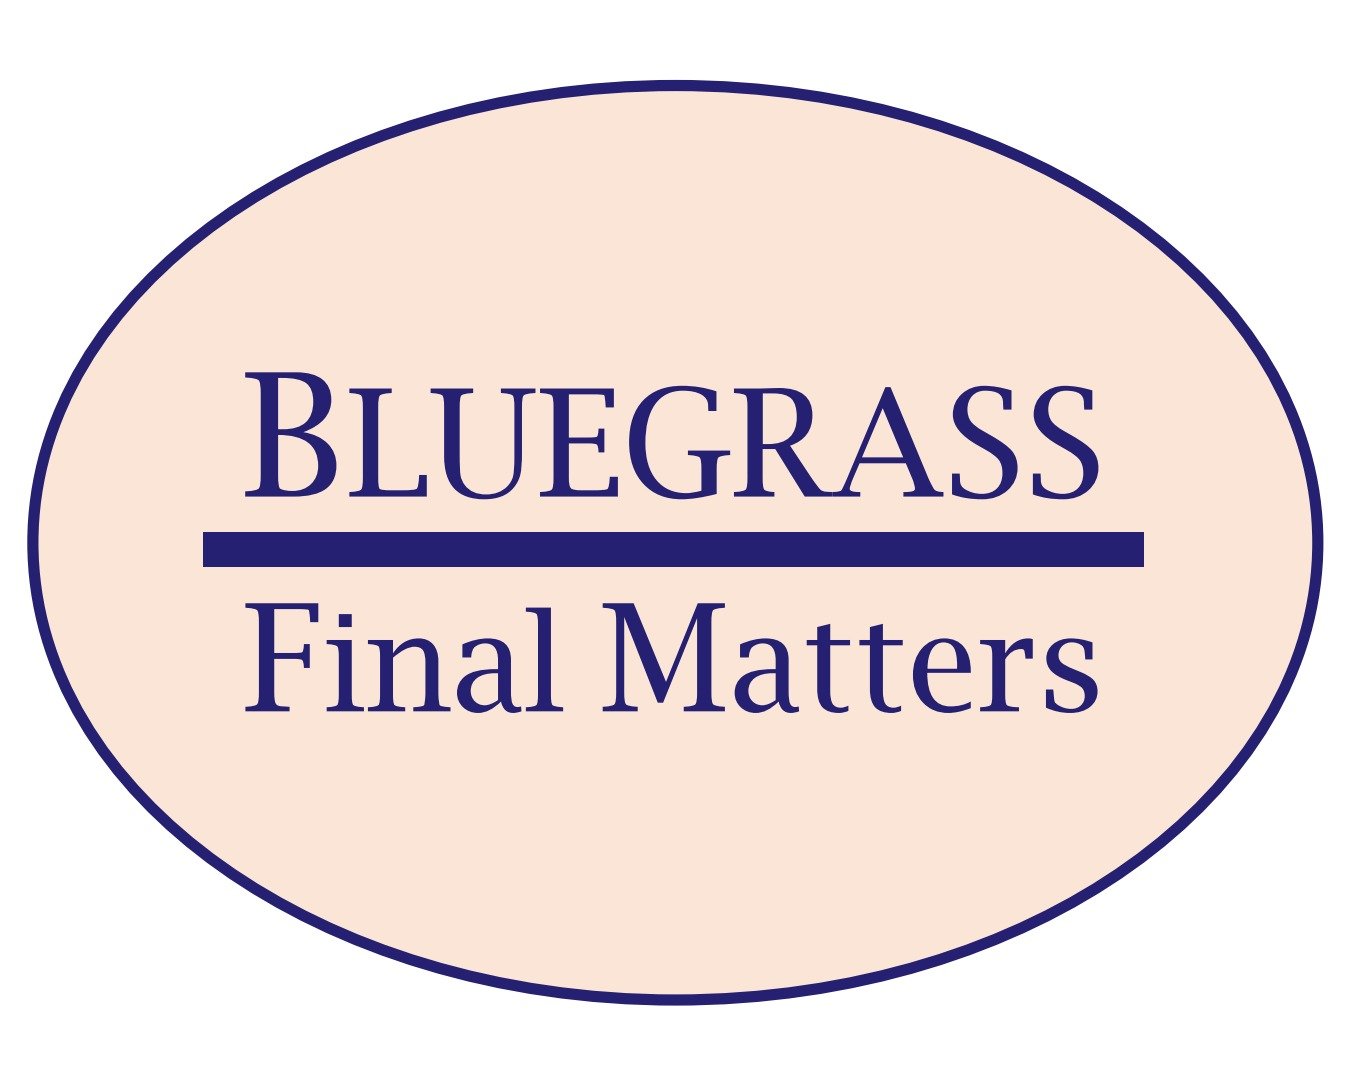 Bluegrass Final Matters